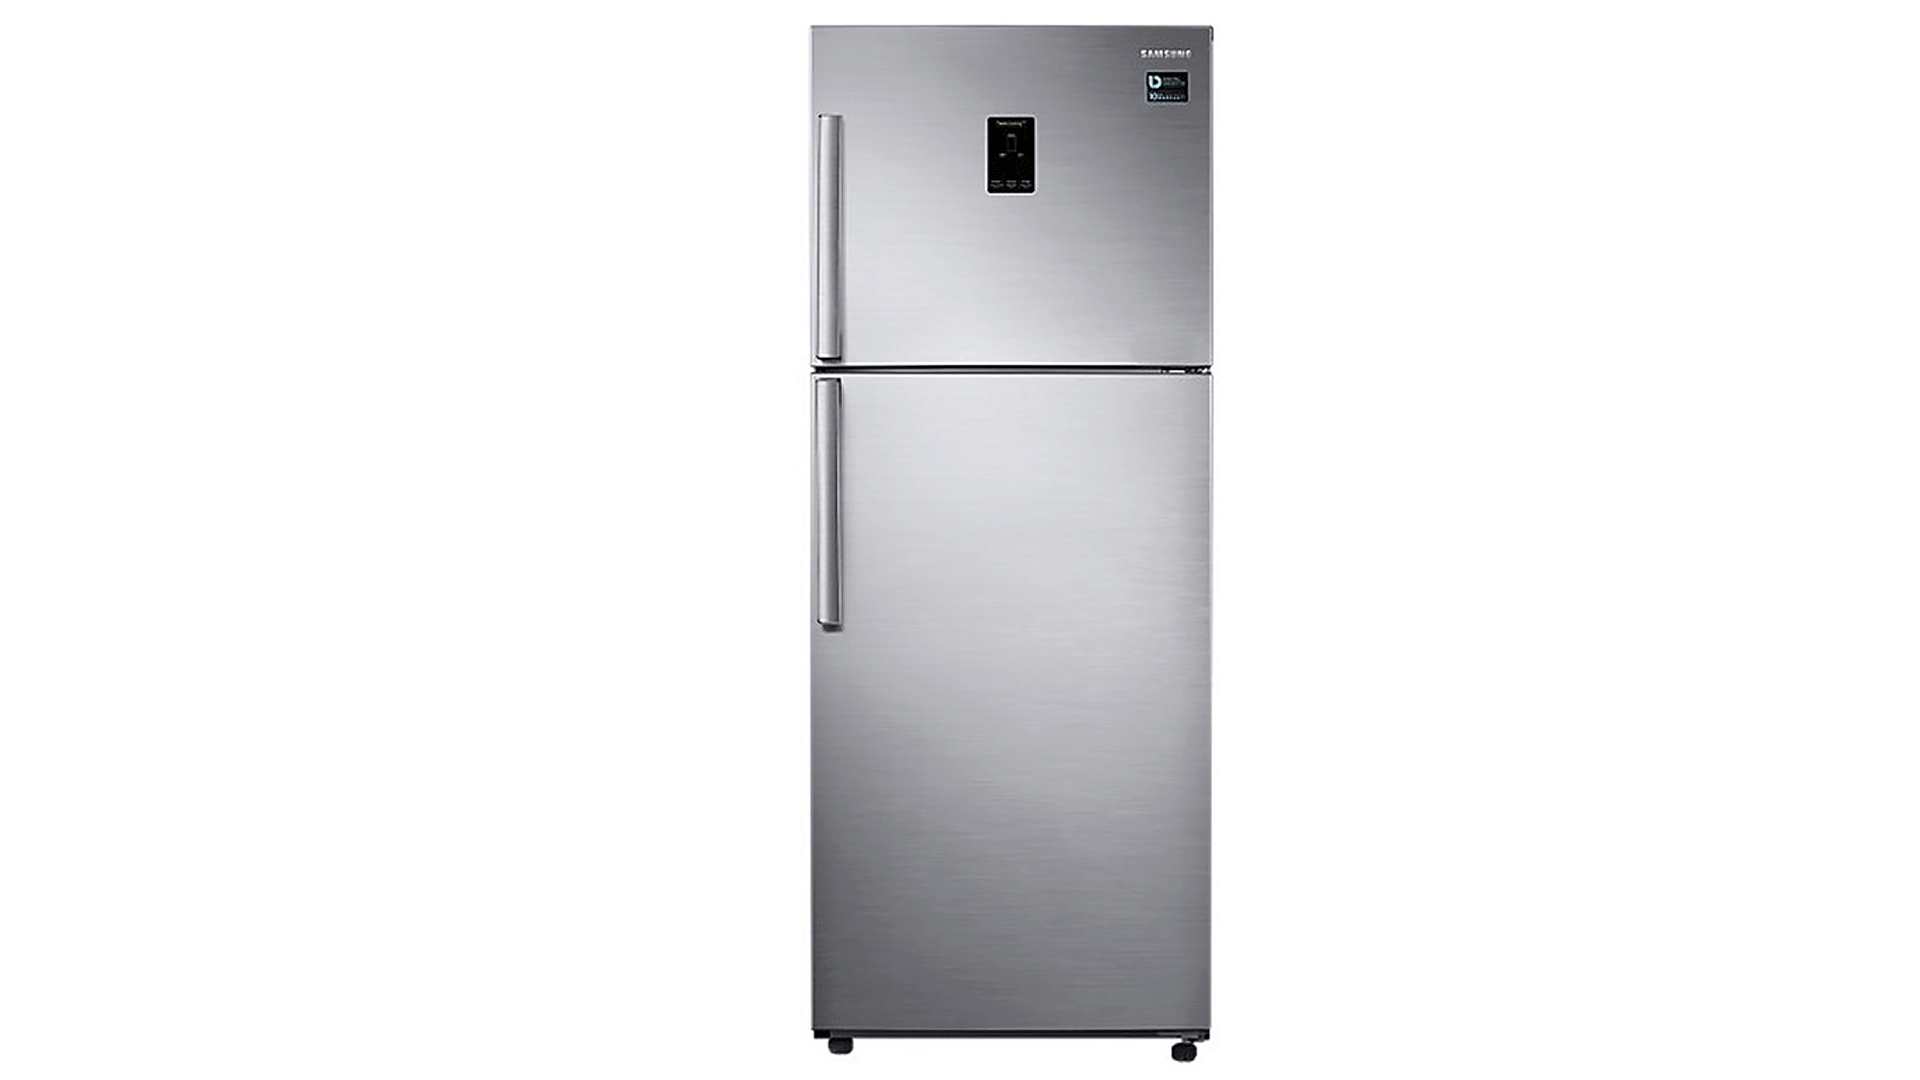 Холодильник Samsung ART RT-35K5440S8 (Стальной) купить